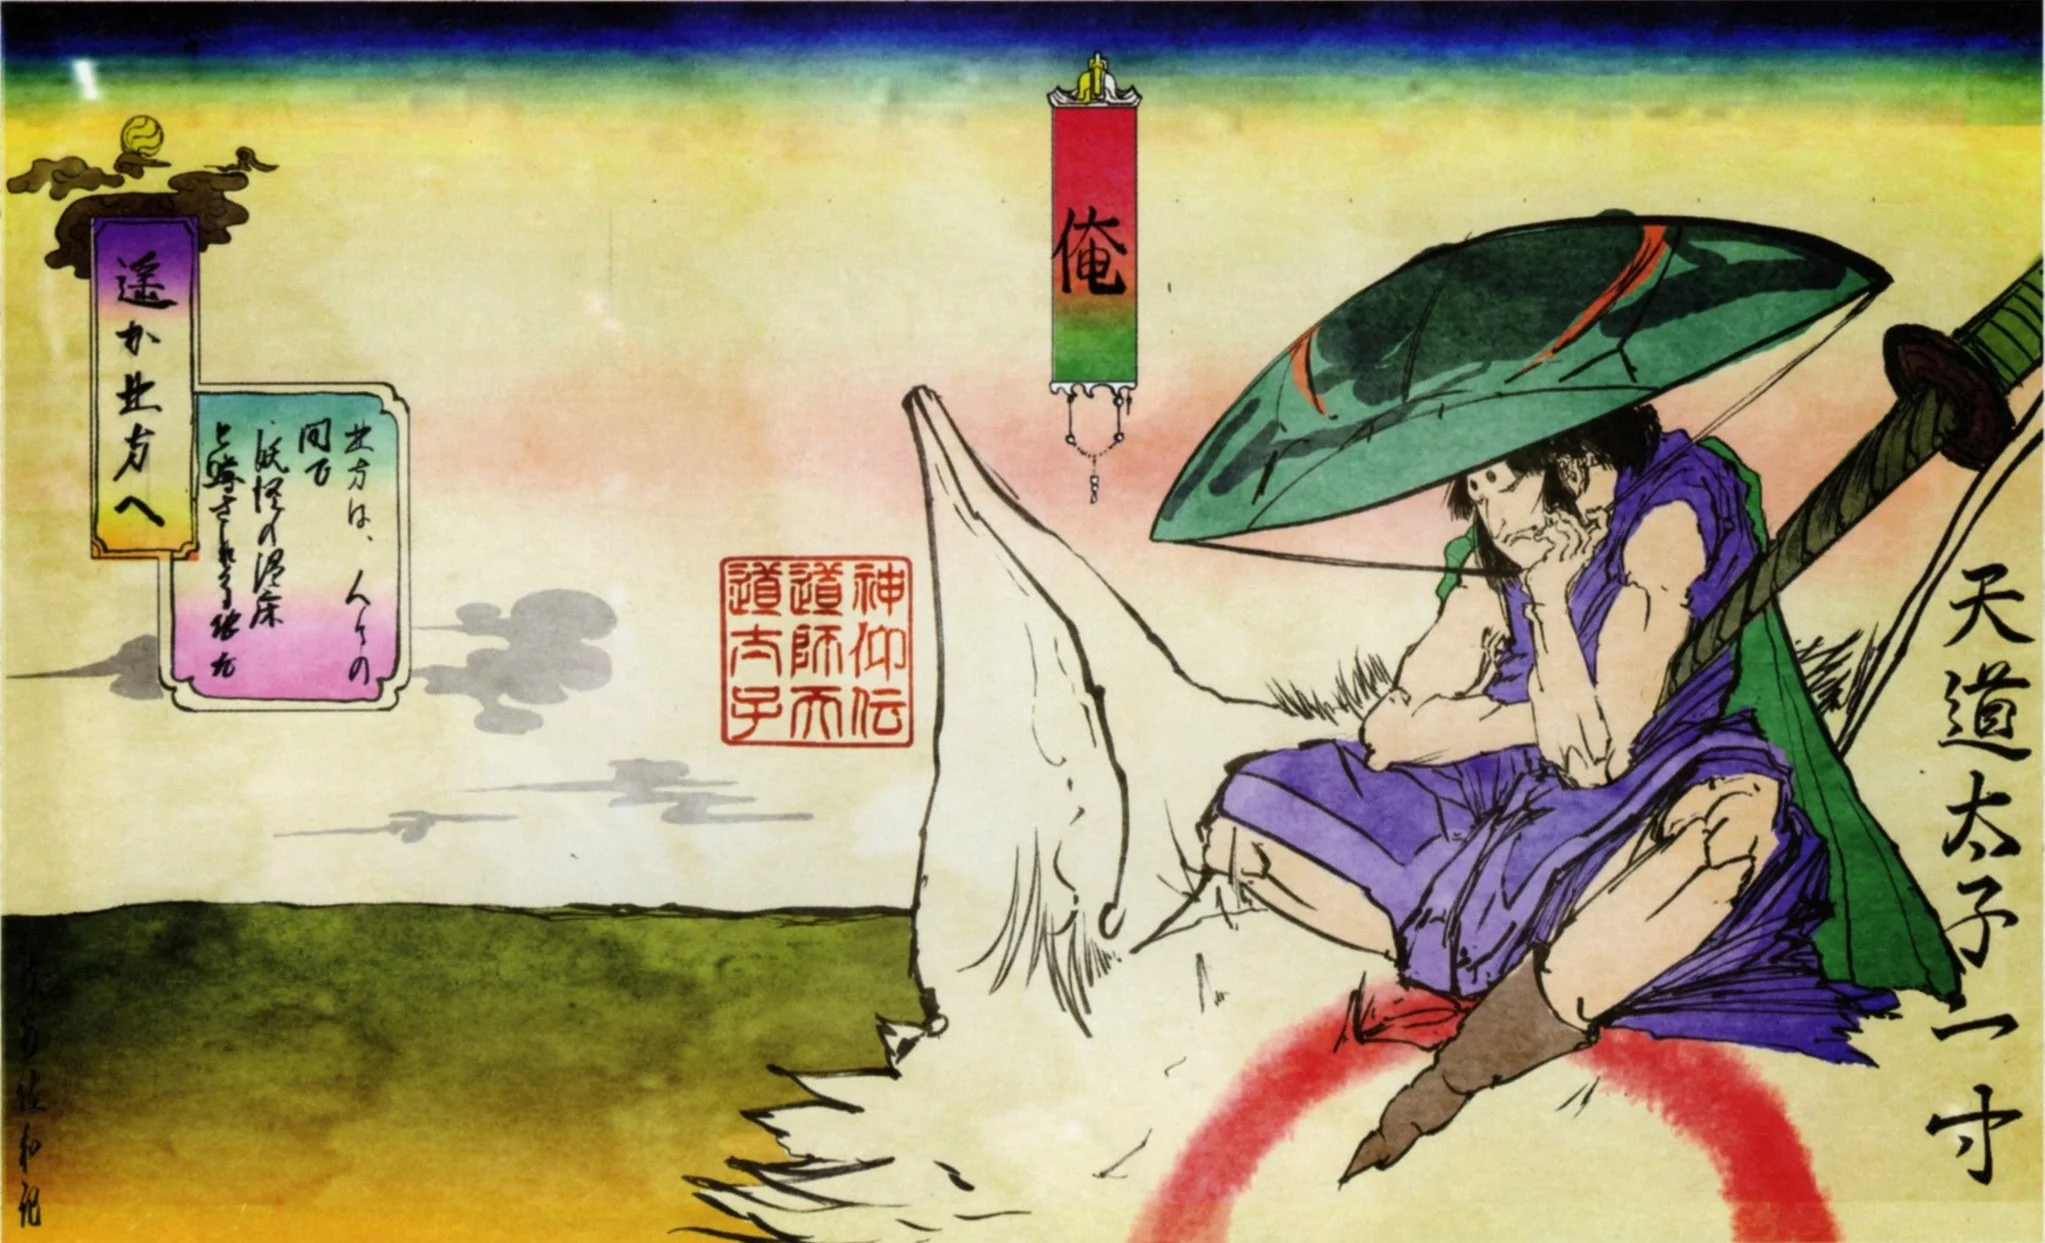 Иссун, главный герой «Иссомбоси», был спутником волчицы-богини Аматэрасу в игре Okami. В игре можно встретить и принцессу Кагуя.